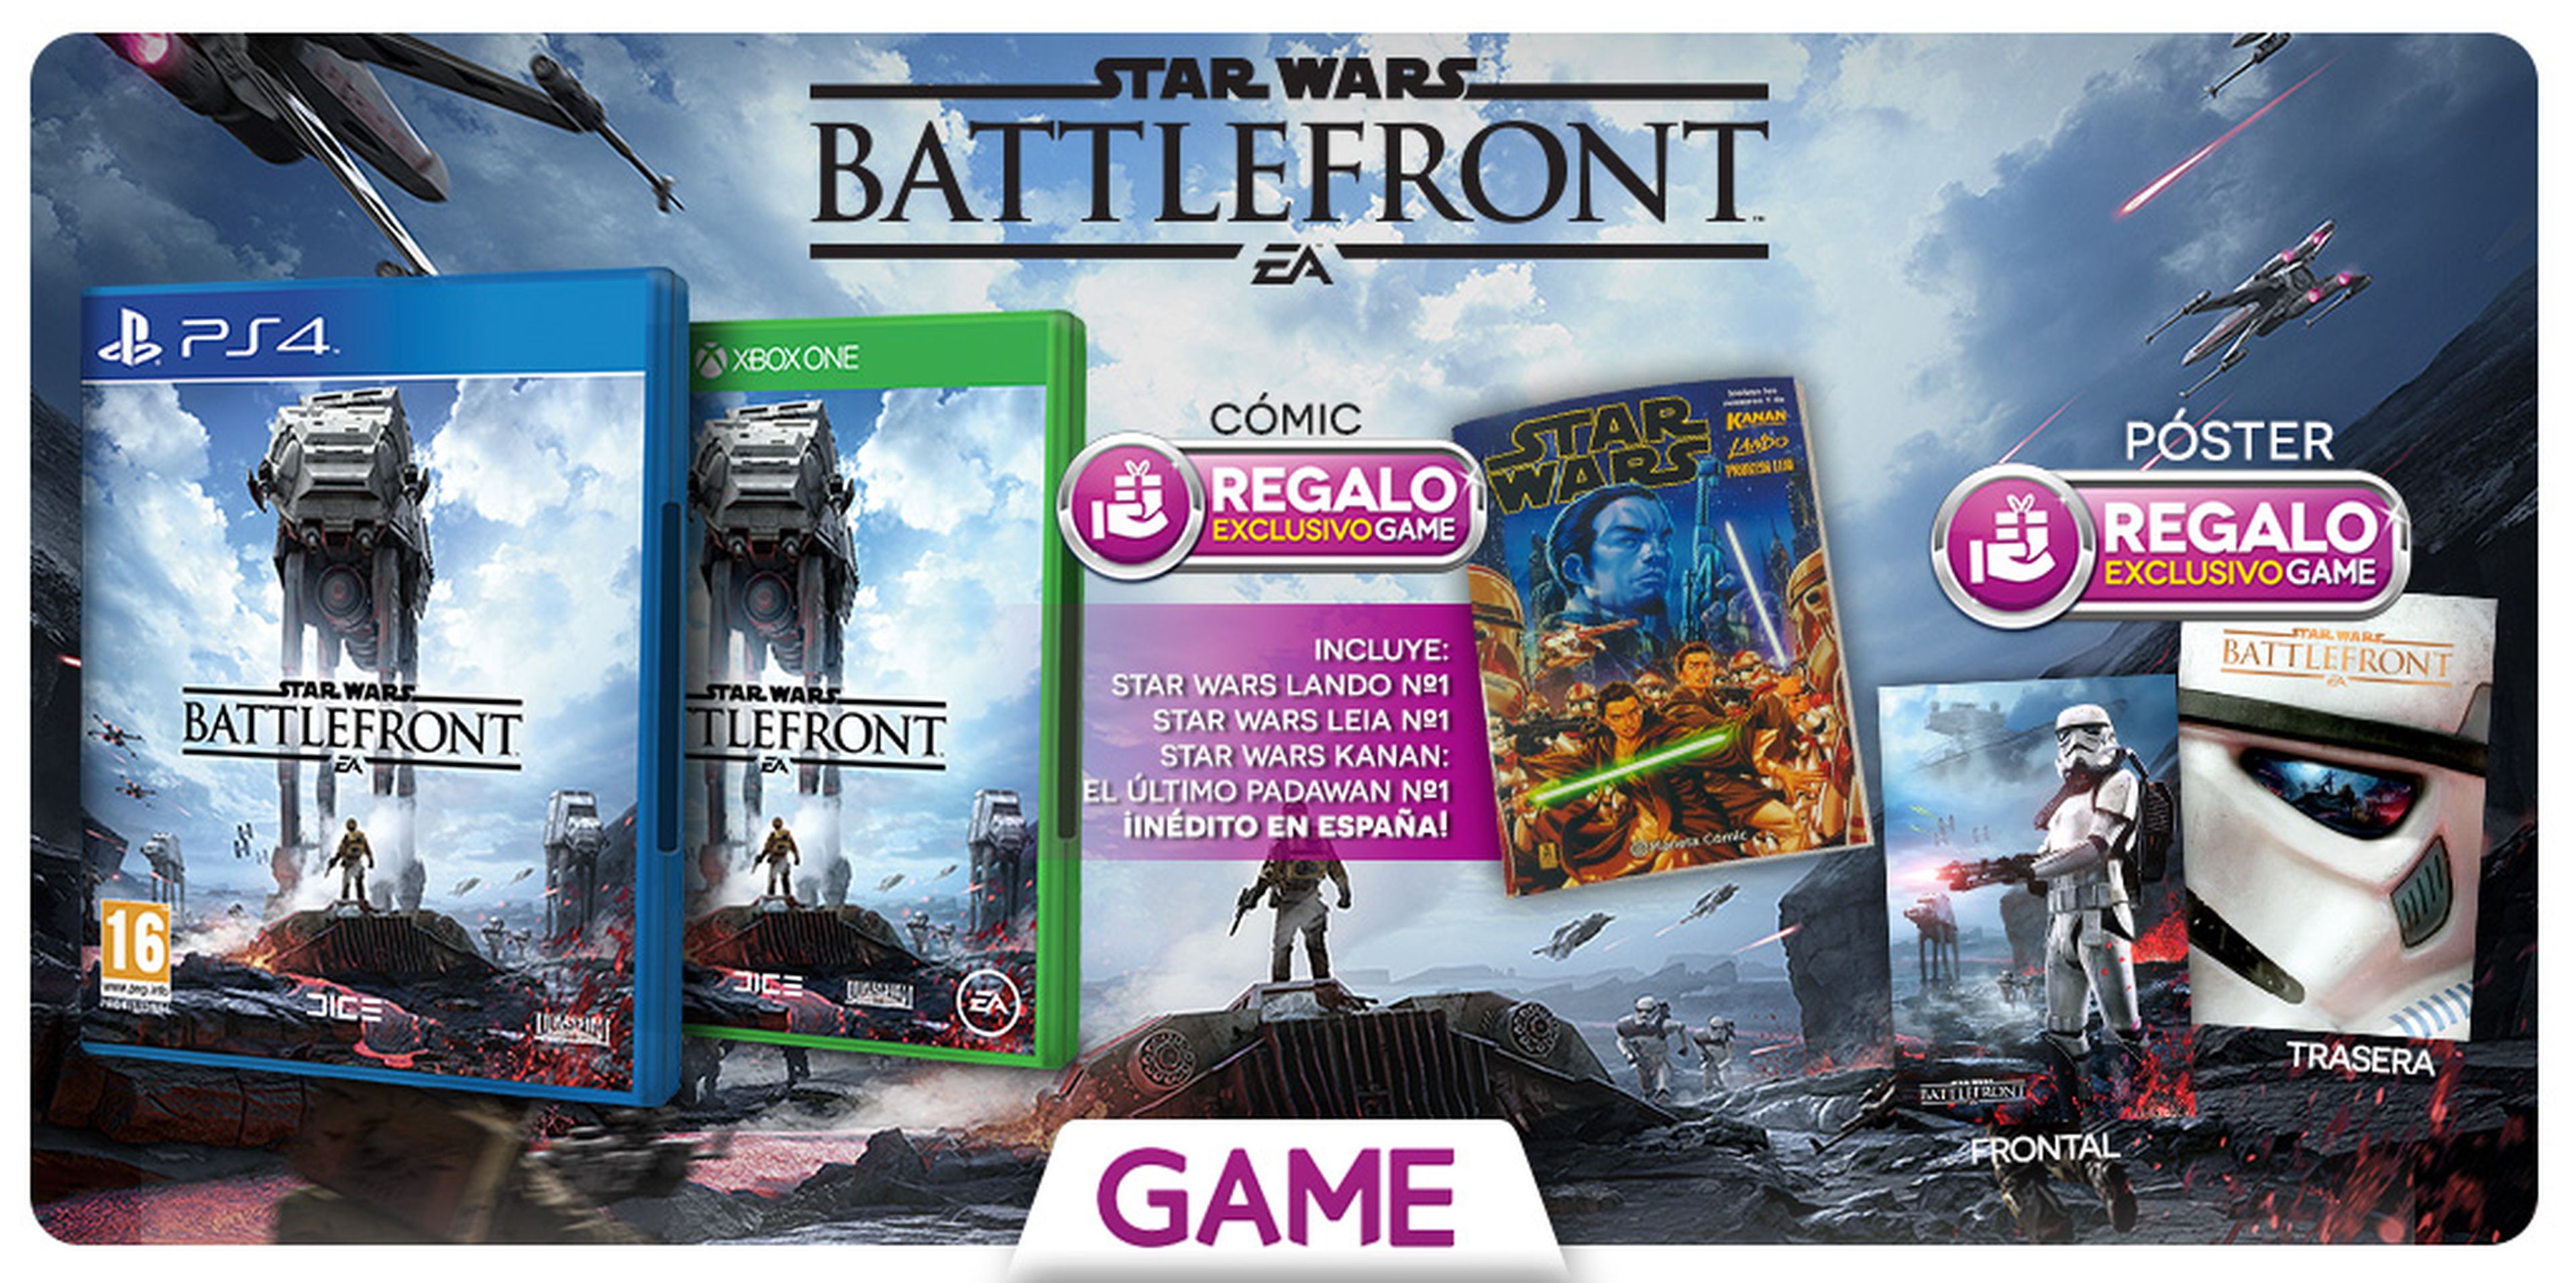 Star Wars Battlefront, regalo exclusivo en GAME